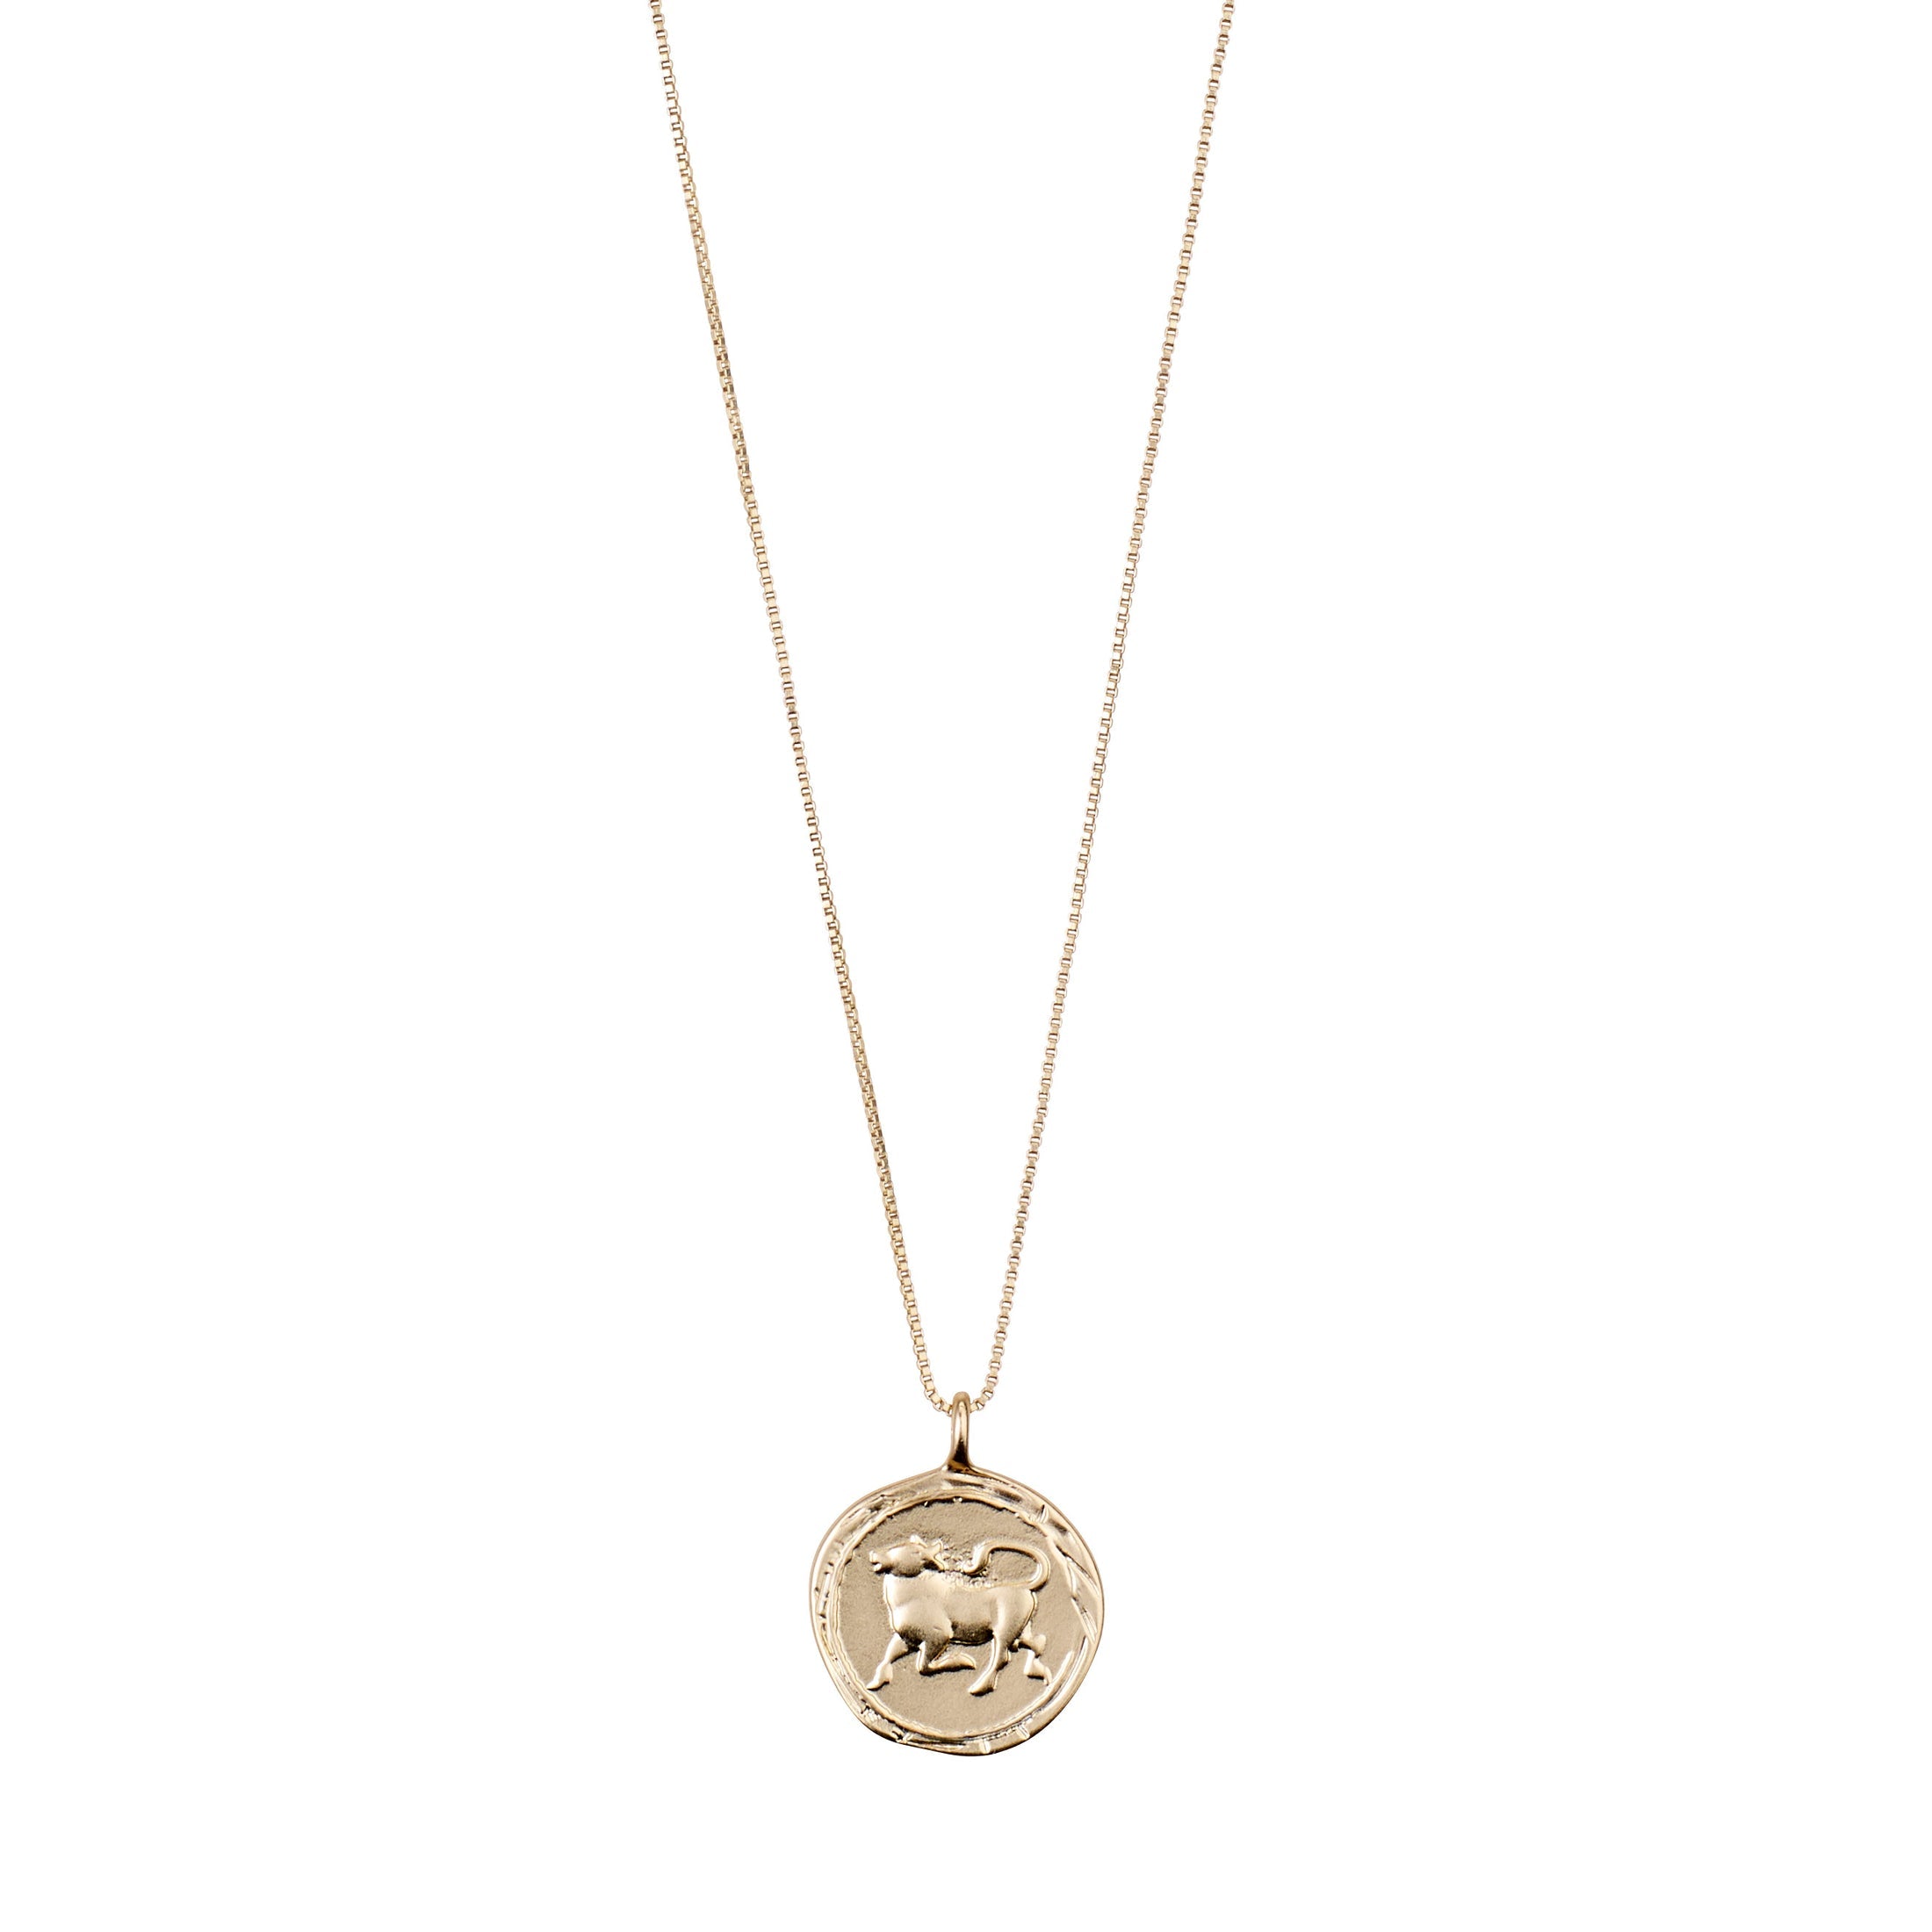 Taurus Horoscope Crystal Necklace